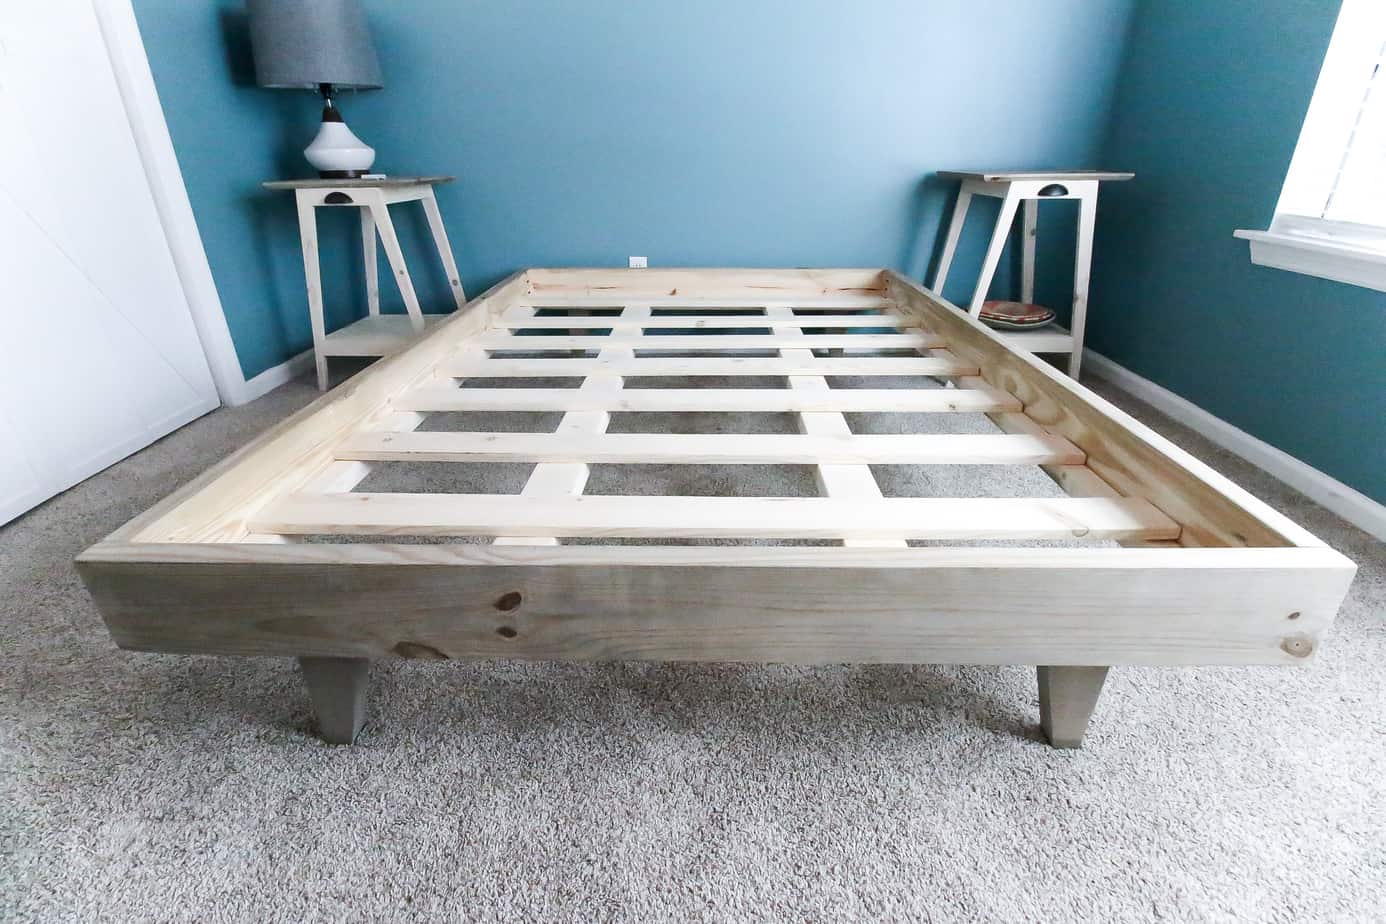 How To Build A Platform Bed For 50, Diy King Bed Platform